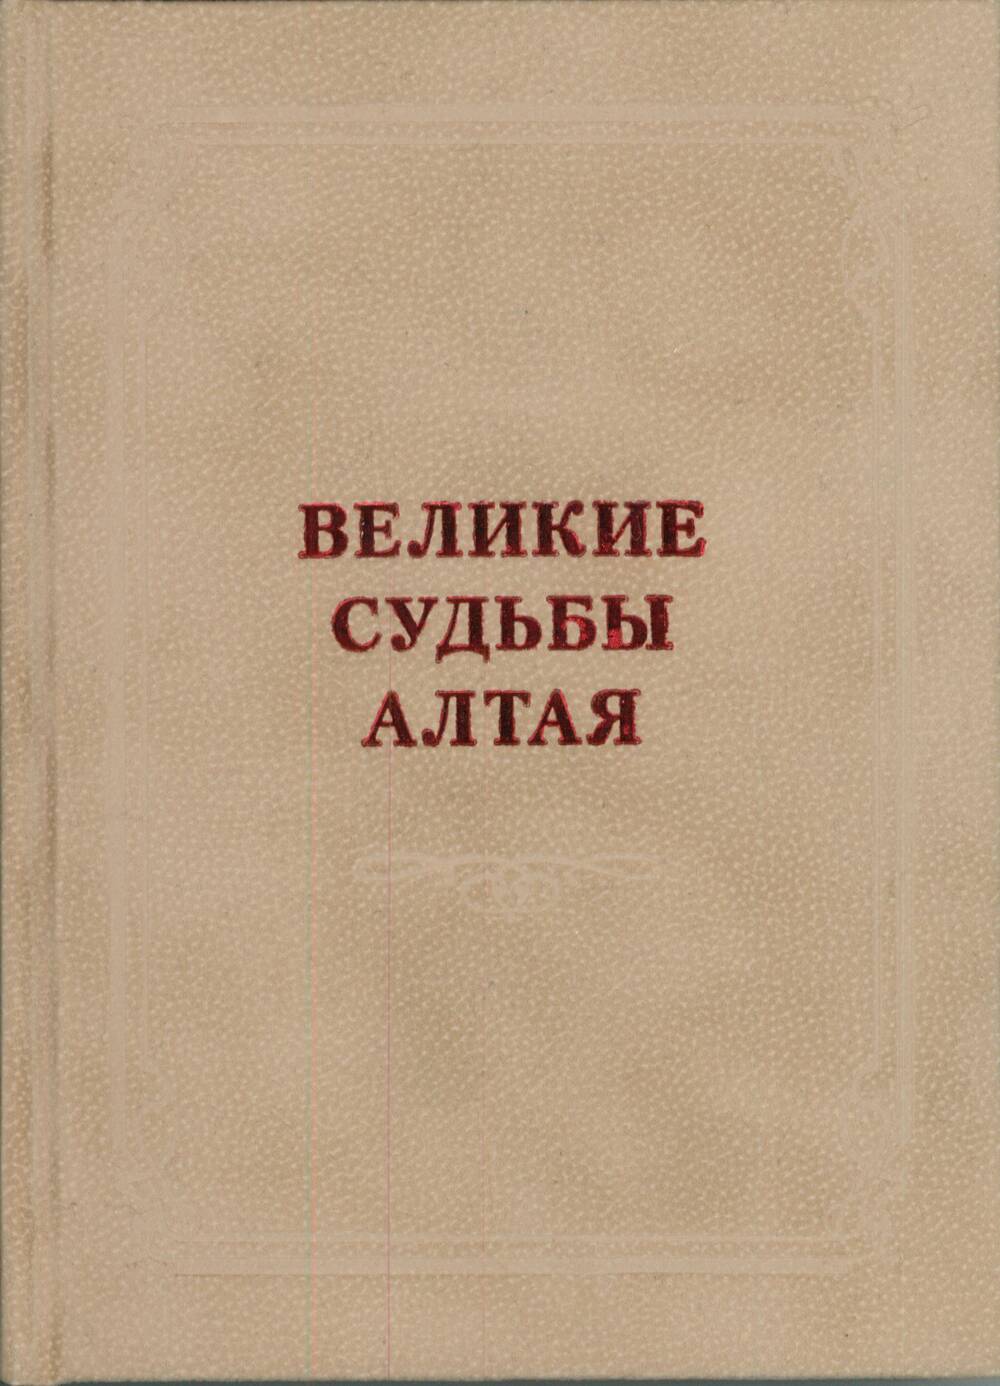 Книга «Великие судьбы Алтая»./ Сост. Е.И. Балакина.